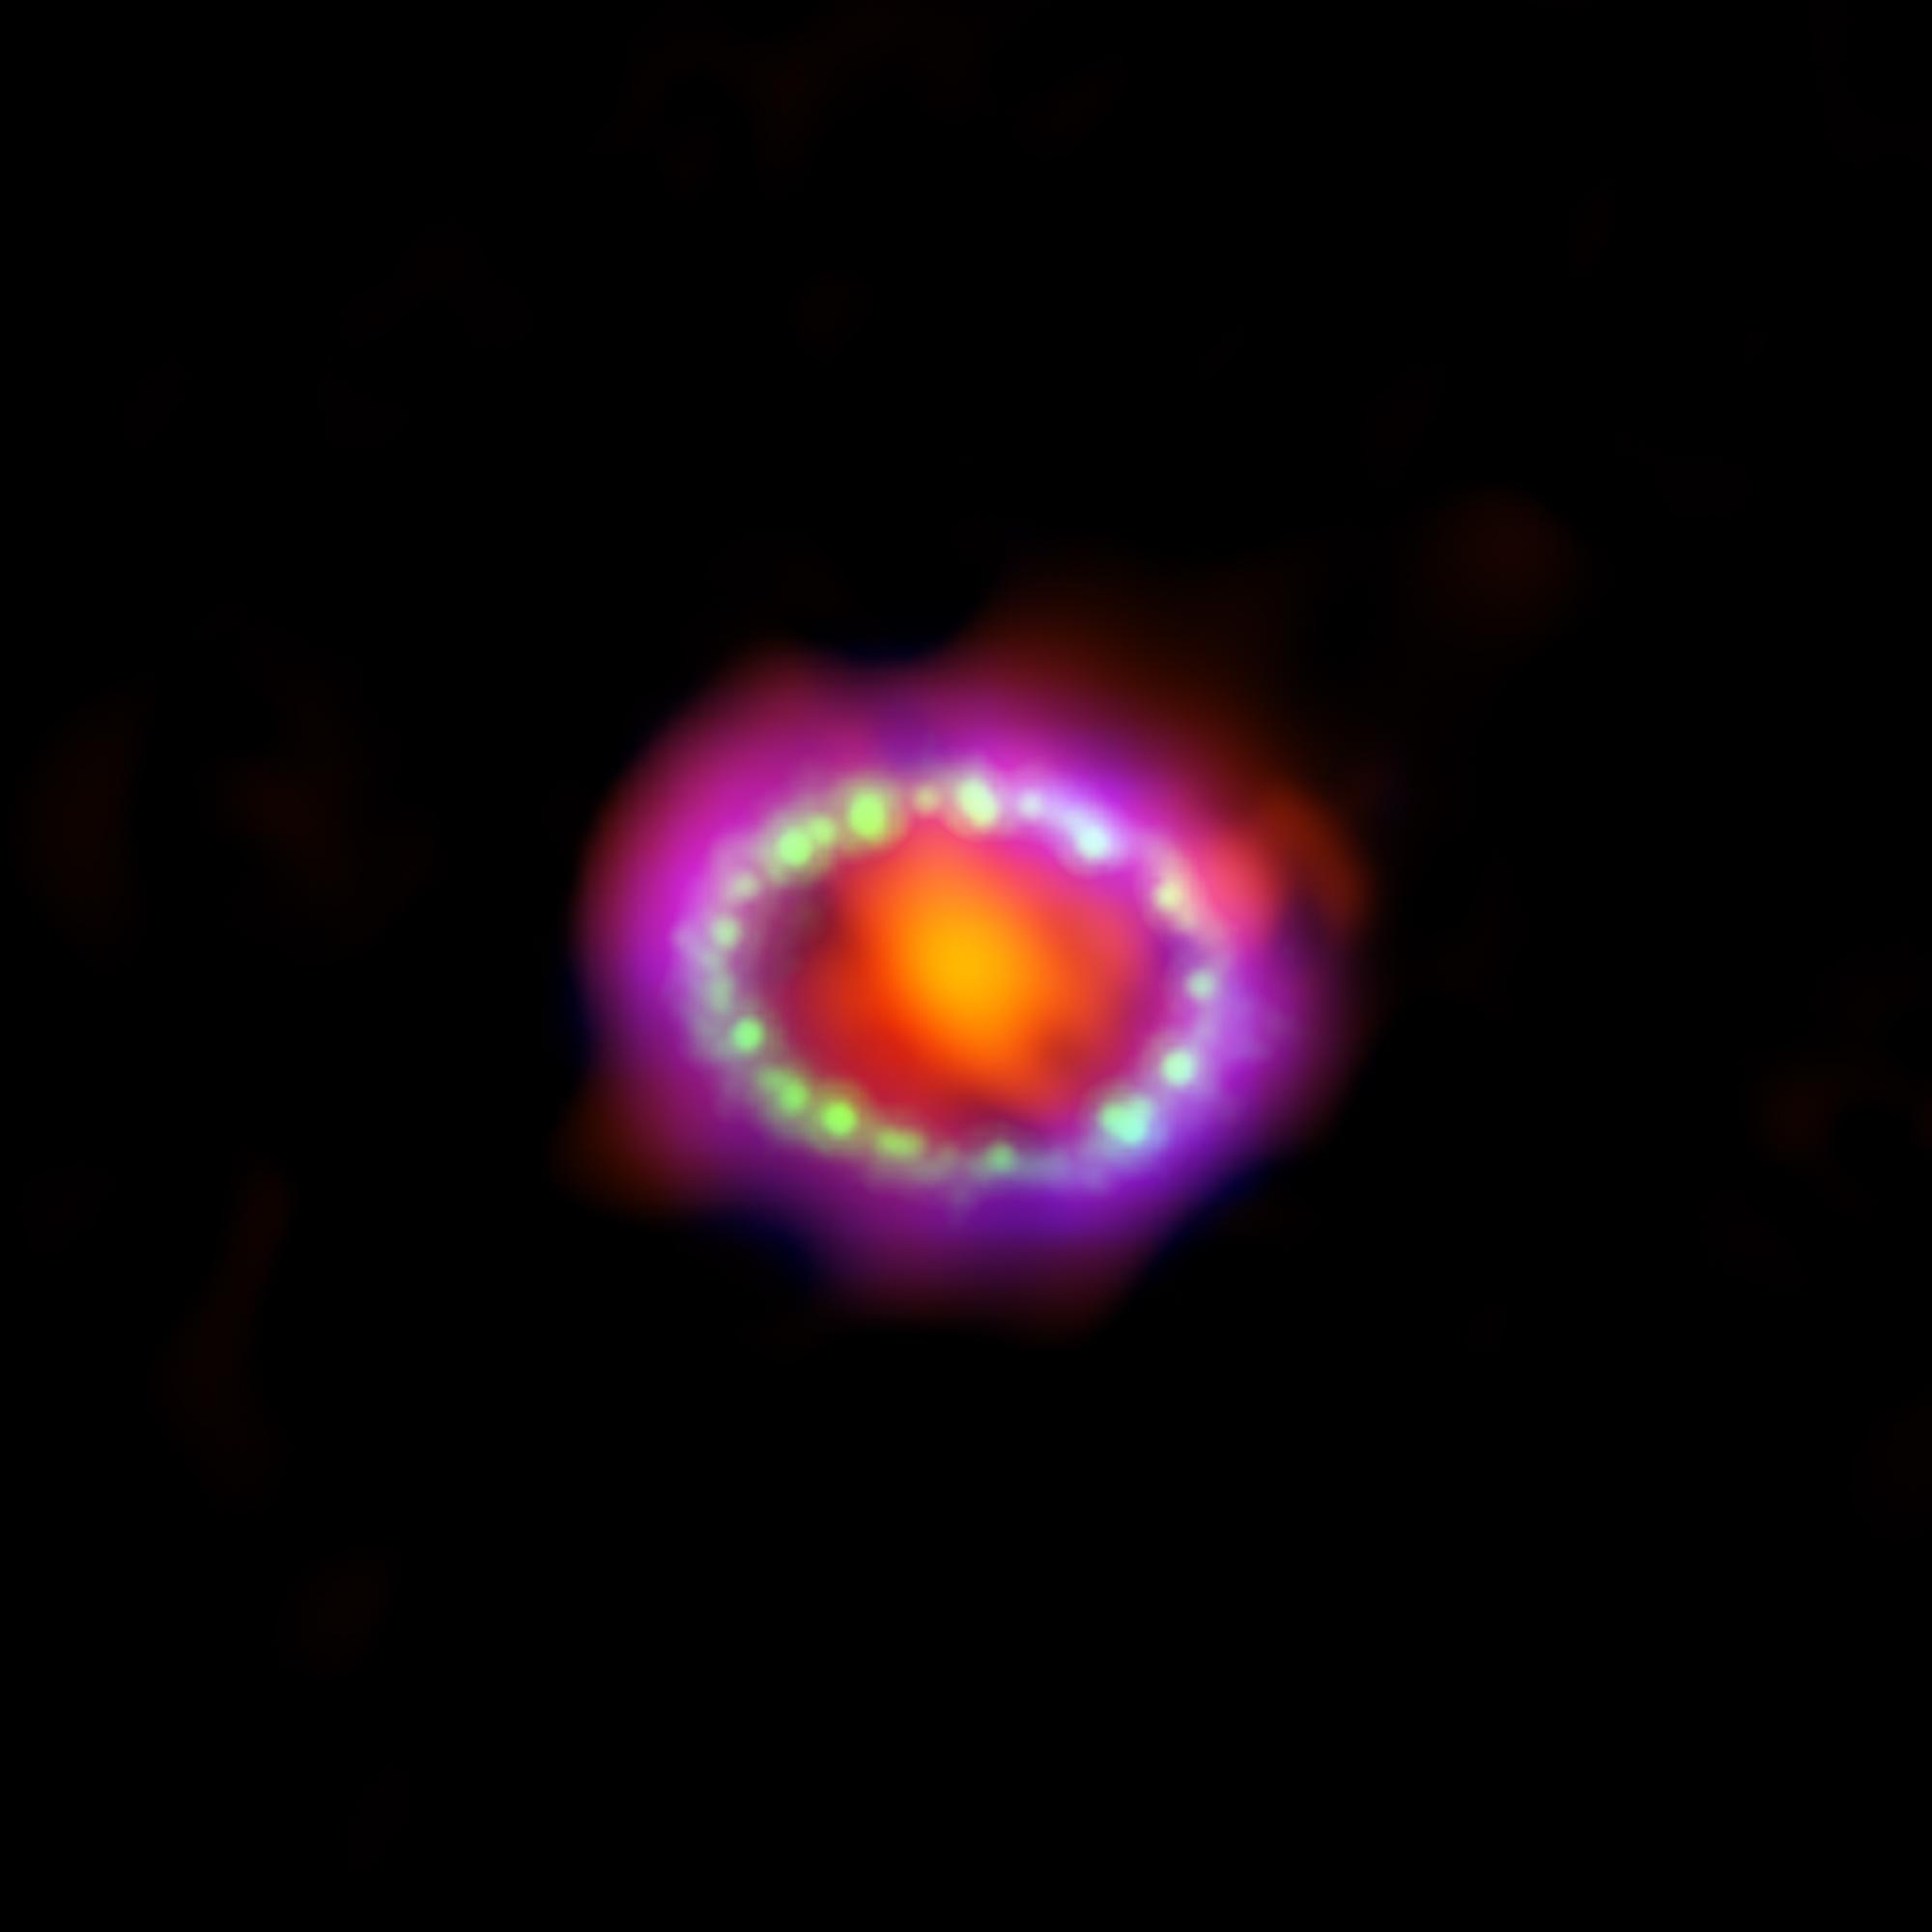 1987A est la première explosion de supernova observée à l'œil nu durant le XXe siècle. Les premières observations du phénomène localisé dans le Grand Nuage de Magellan ont été faites quelques heures à peine après que son éclat eut atteint la Terre, dans la nuit du 23 février 1987, dans l'hémisphère sud. [Millimeter: ESO/NAOJ/NRAO/ALMA - X-ray: NASA/CXC/SAO/PSU/K.Frank et al.; Optical: NASA/STScI]